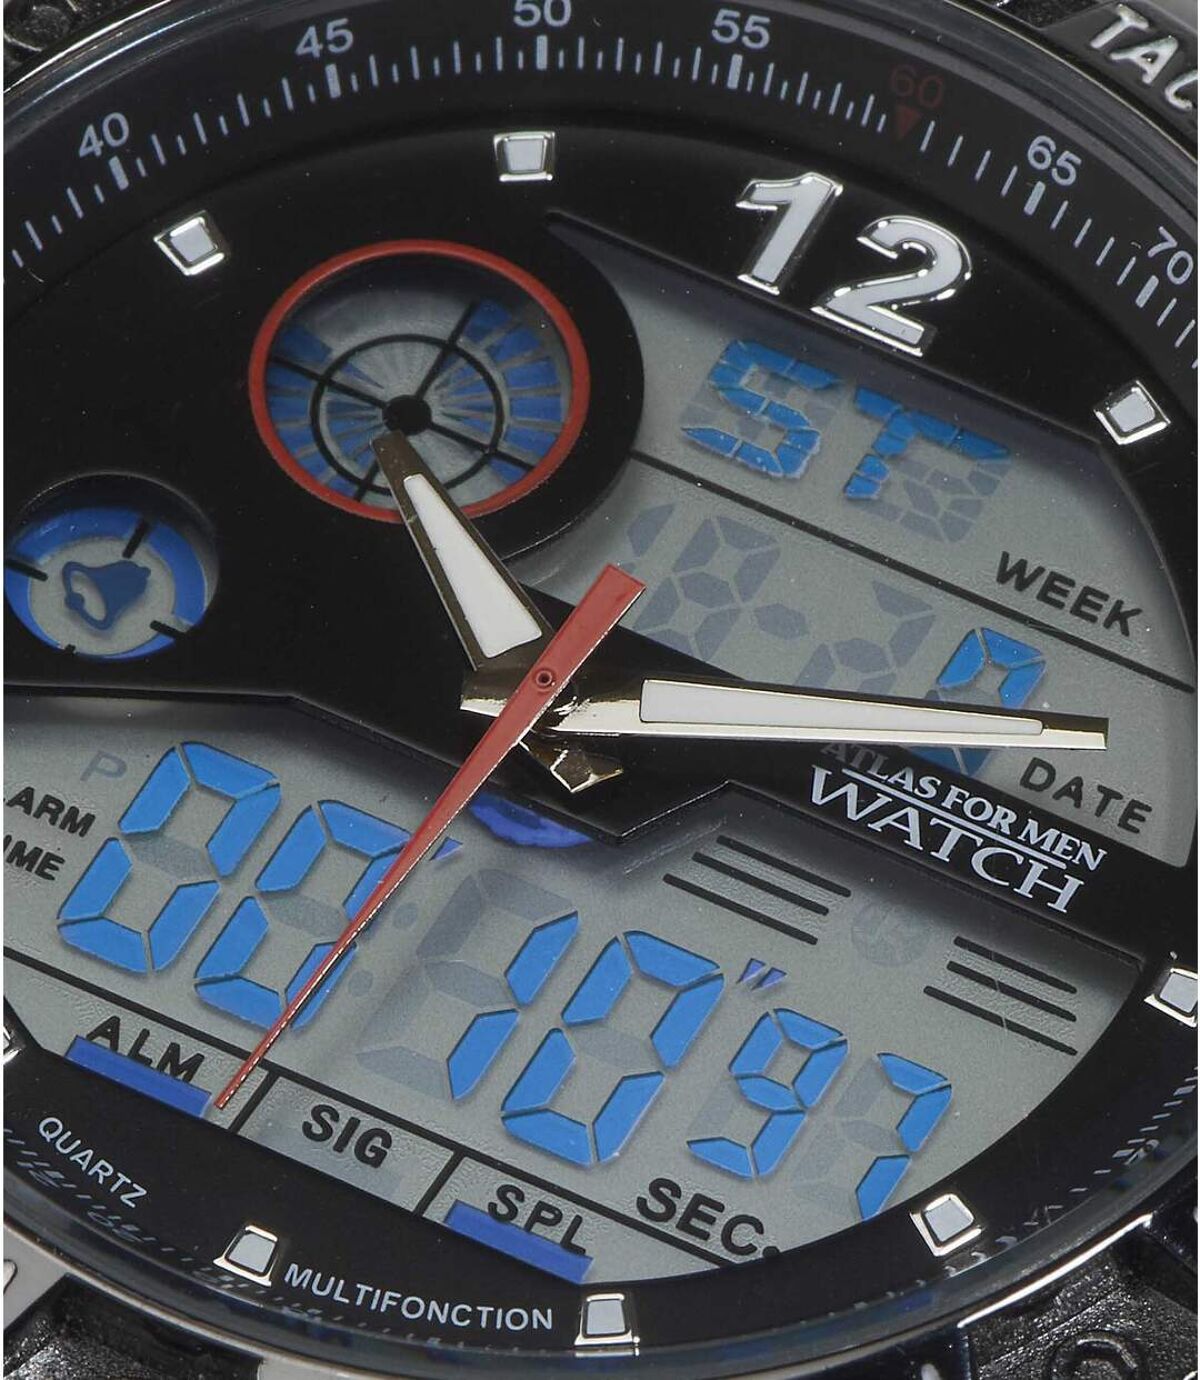 Analogowo-cyfrowy zegarek z chronometrem Atlas For Men